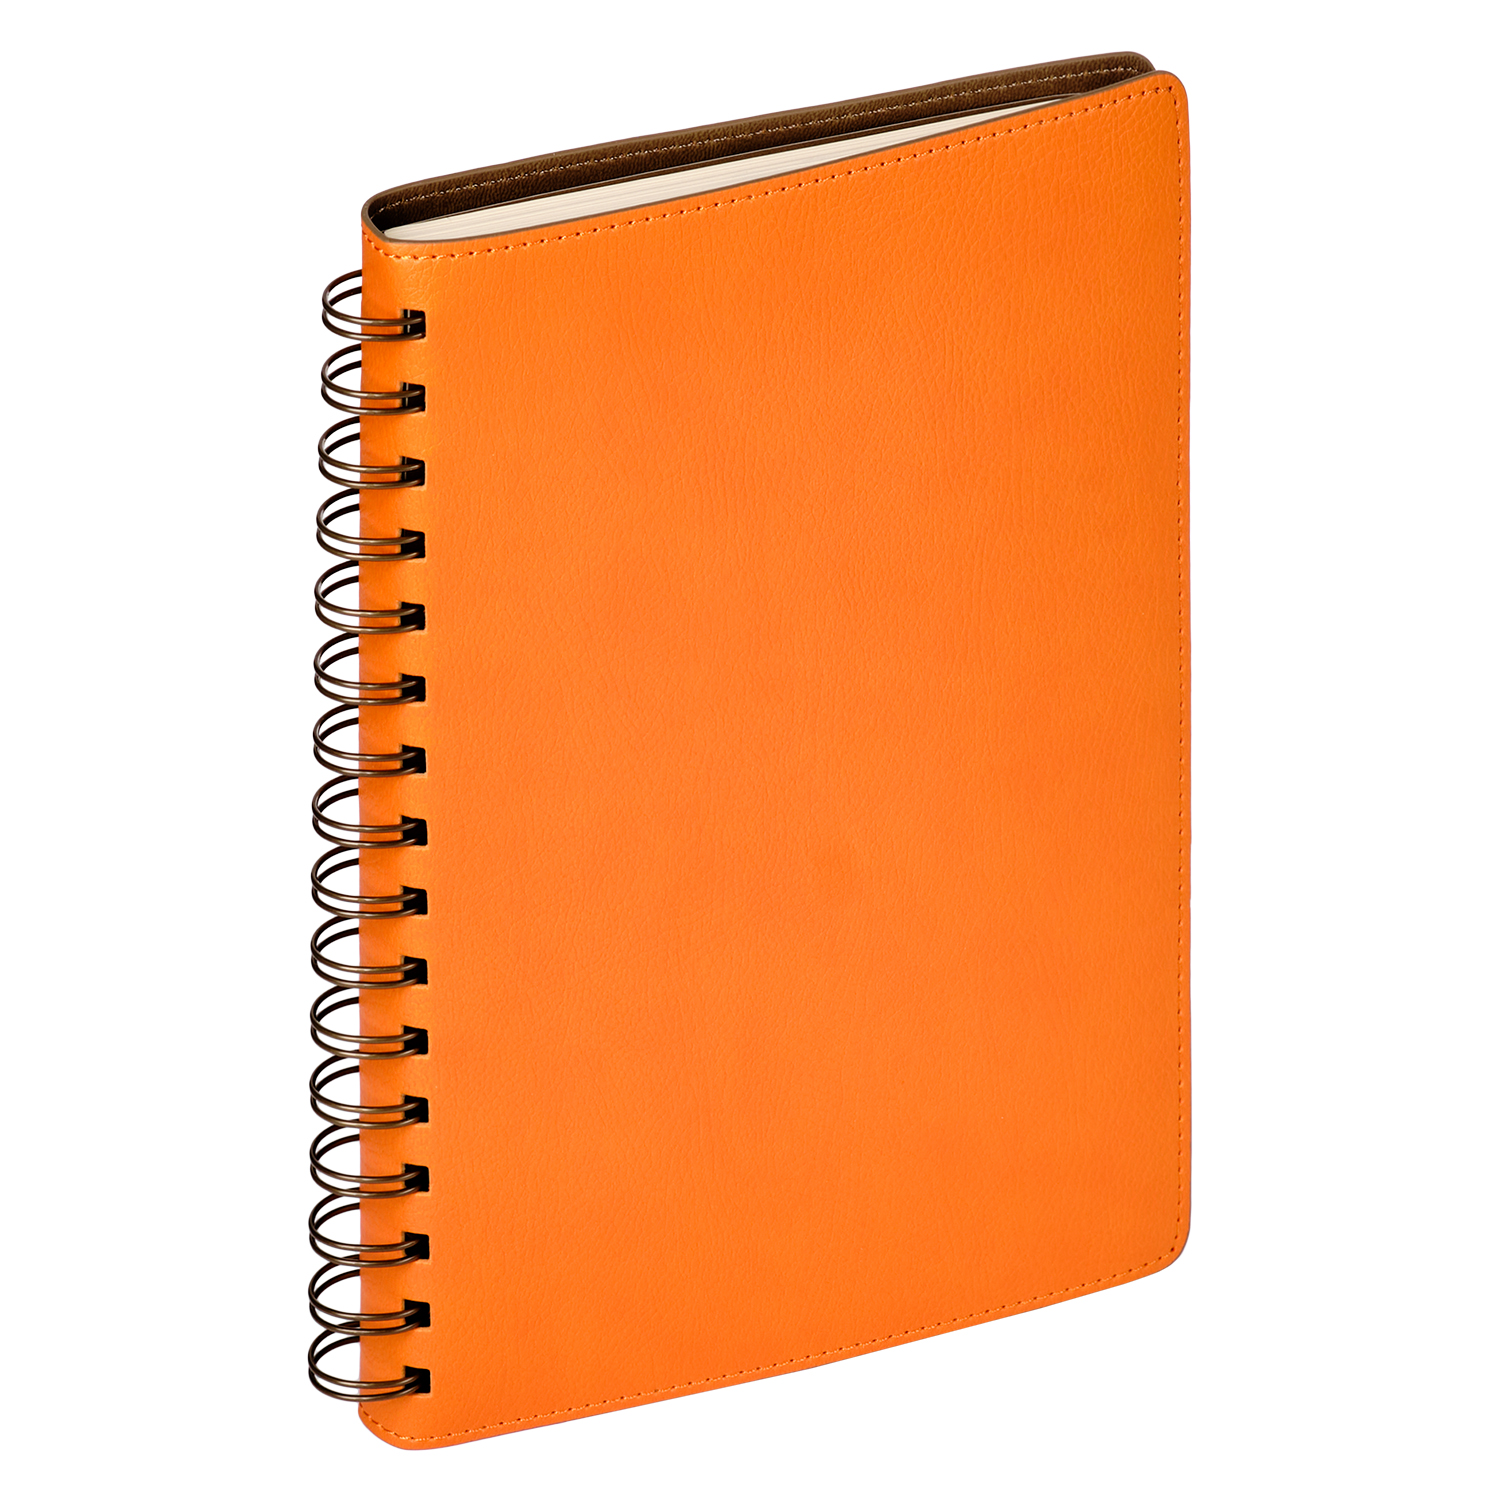 Ежедневник Portobello Trend, Vista, недатированный, оранжевый/коричневый